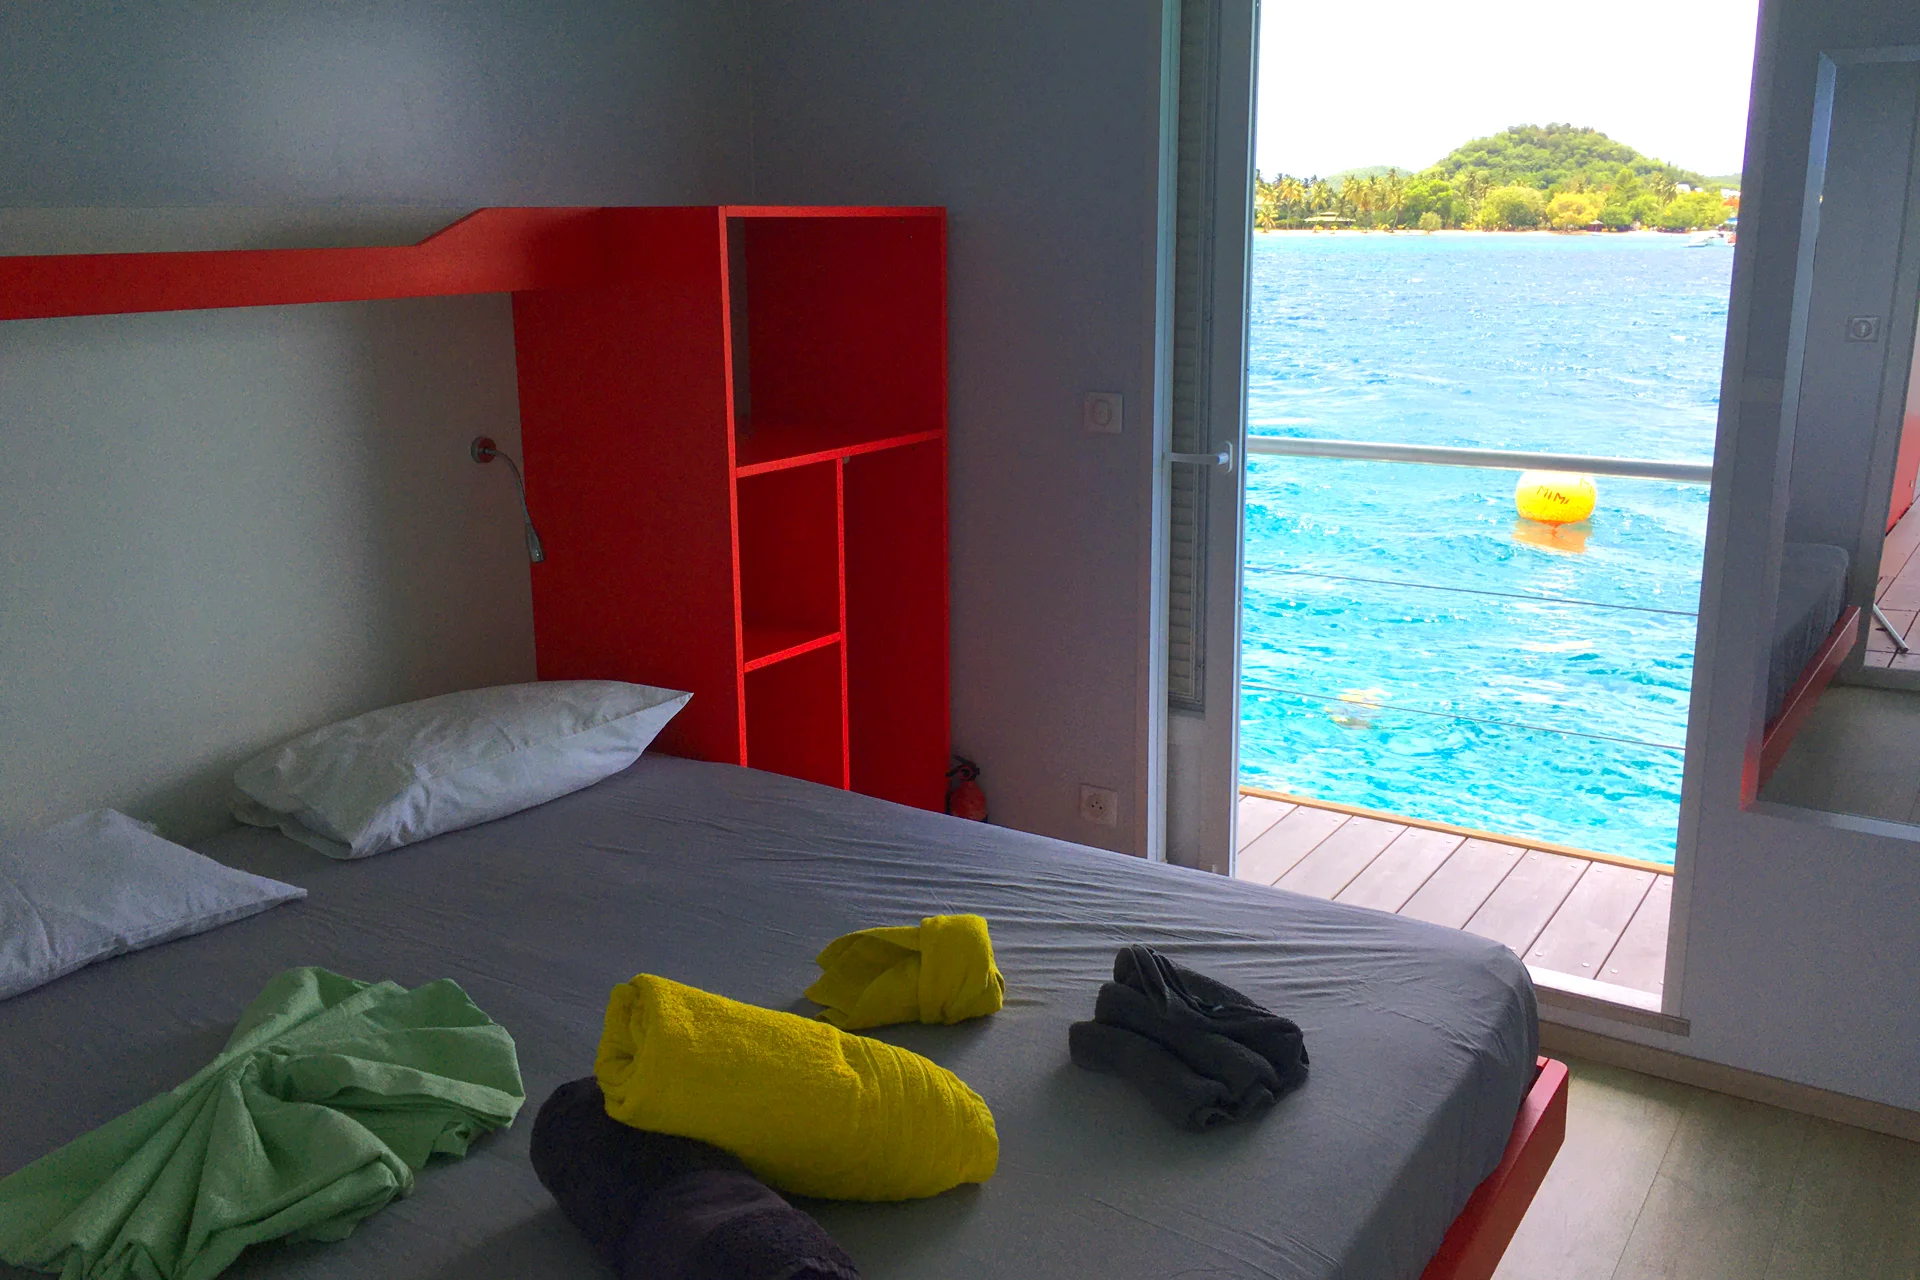 Aqualodge Wasservilla Schlafzimmer Yachtcharter